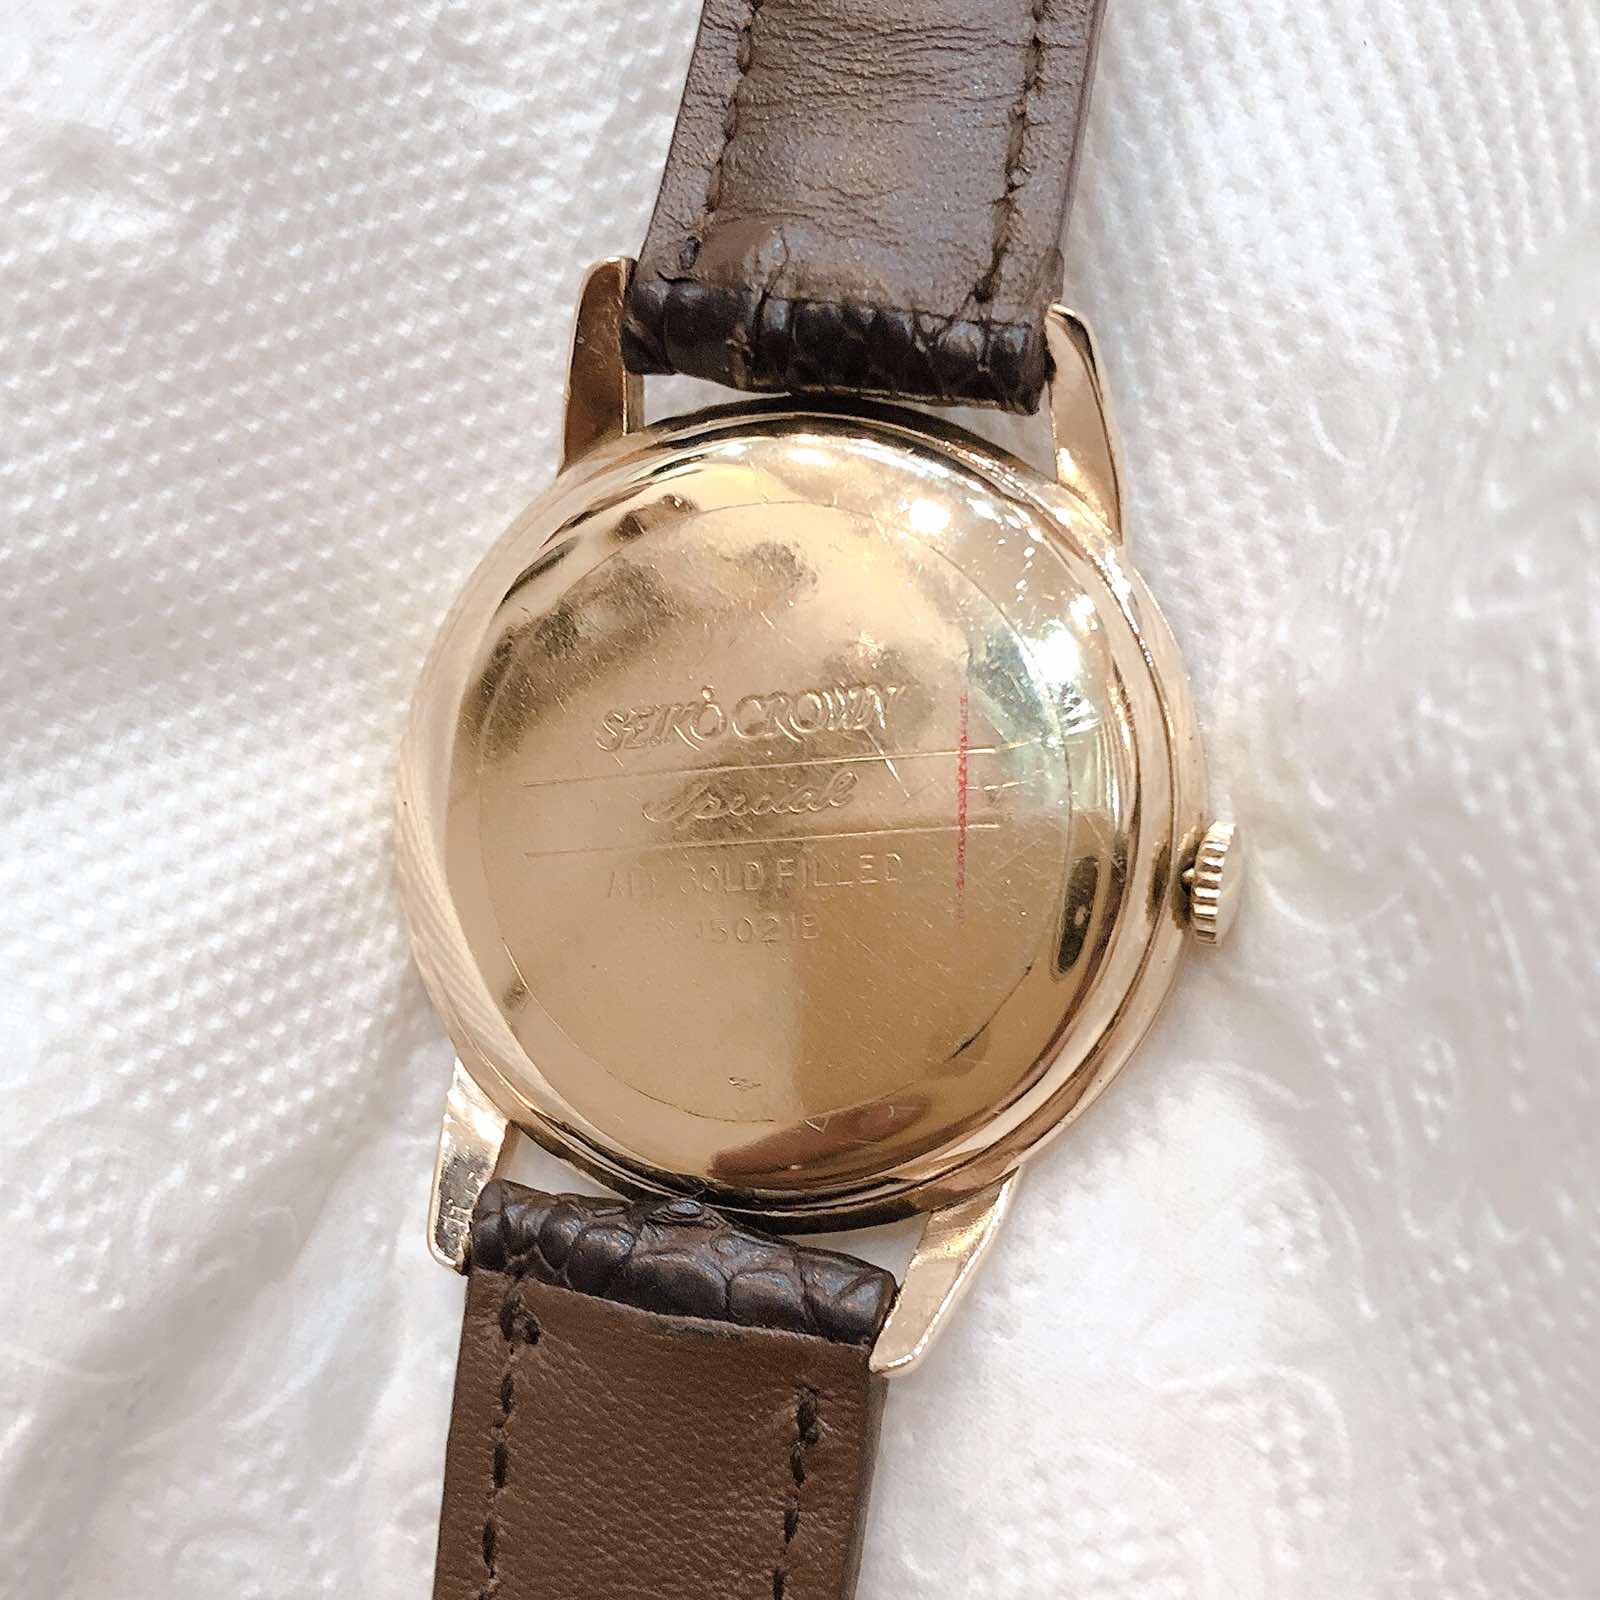 Đồng hồ cổ Seiko Crown kim đĩa bản đặc biệt 12 con giáp chính hãng nhật bản